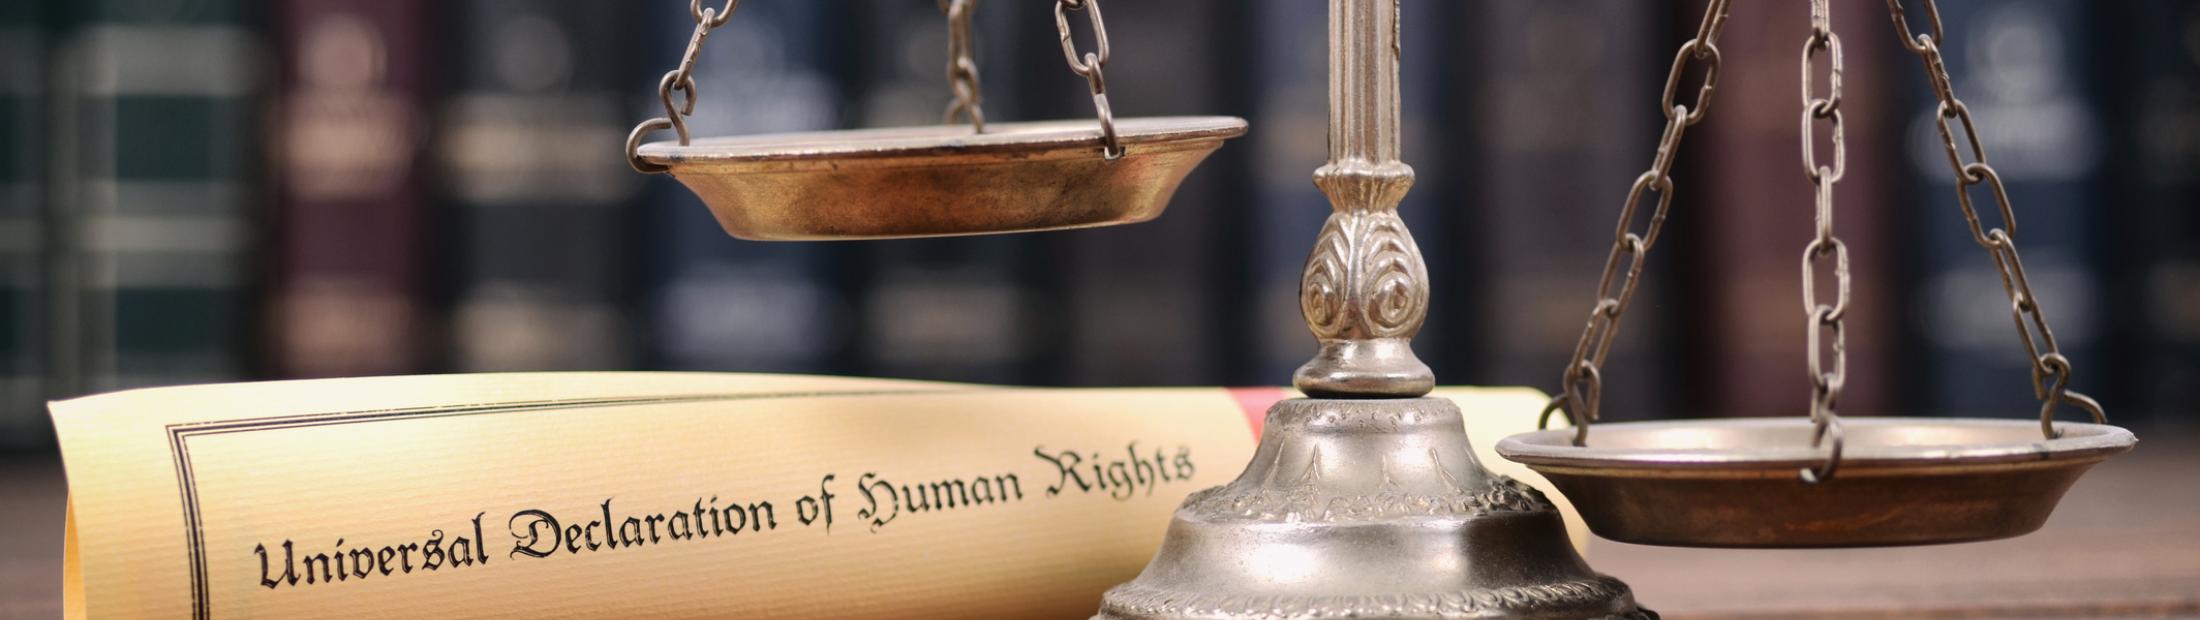 ¿Por qué se celebra el Día Internacional de los Derechos Humanos?